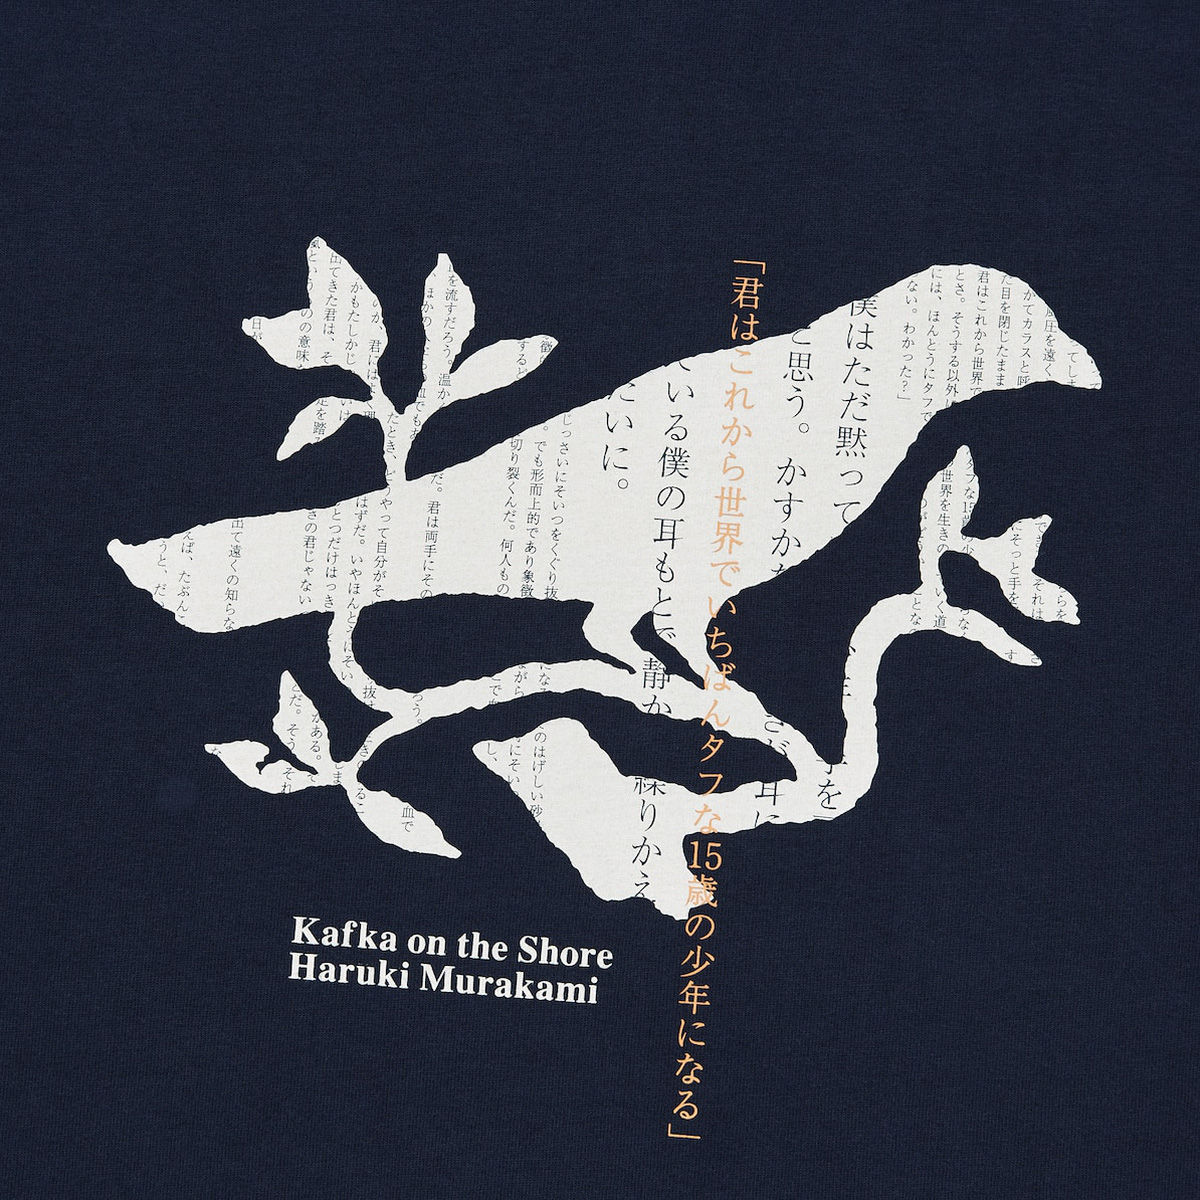 Bộ sưu tập áo thun Uniqlo X Haruki Murakami dành cho người yêu văn học   JAPO  Cổng thông tin Nhật Bản